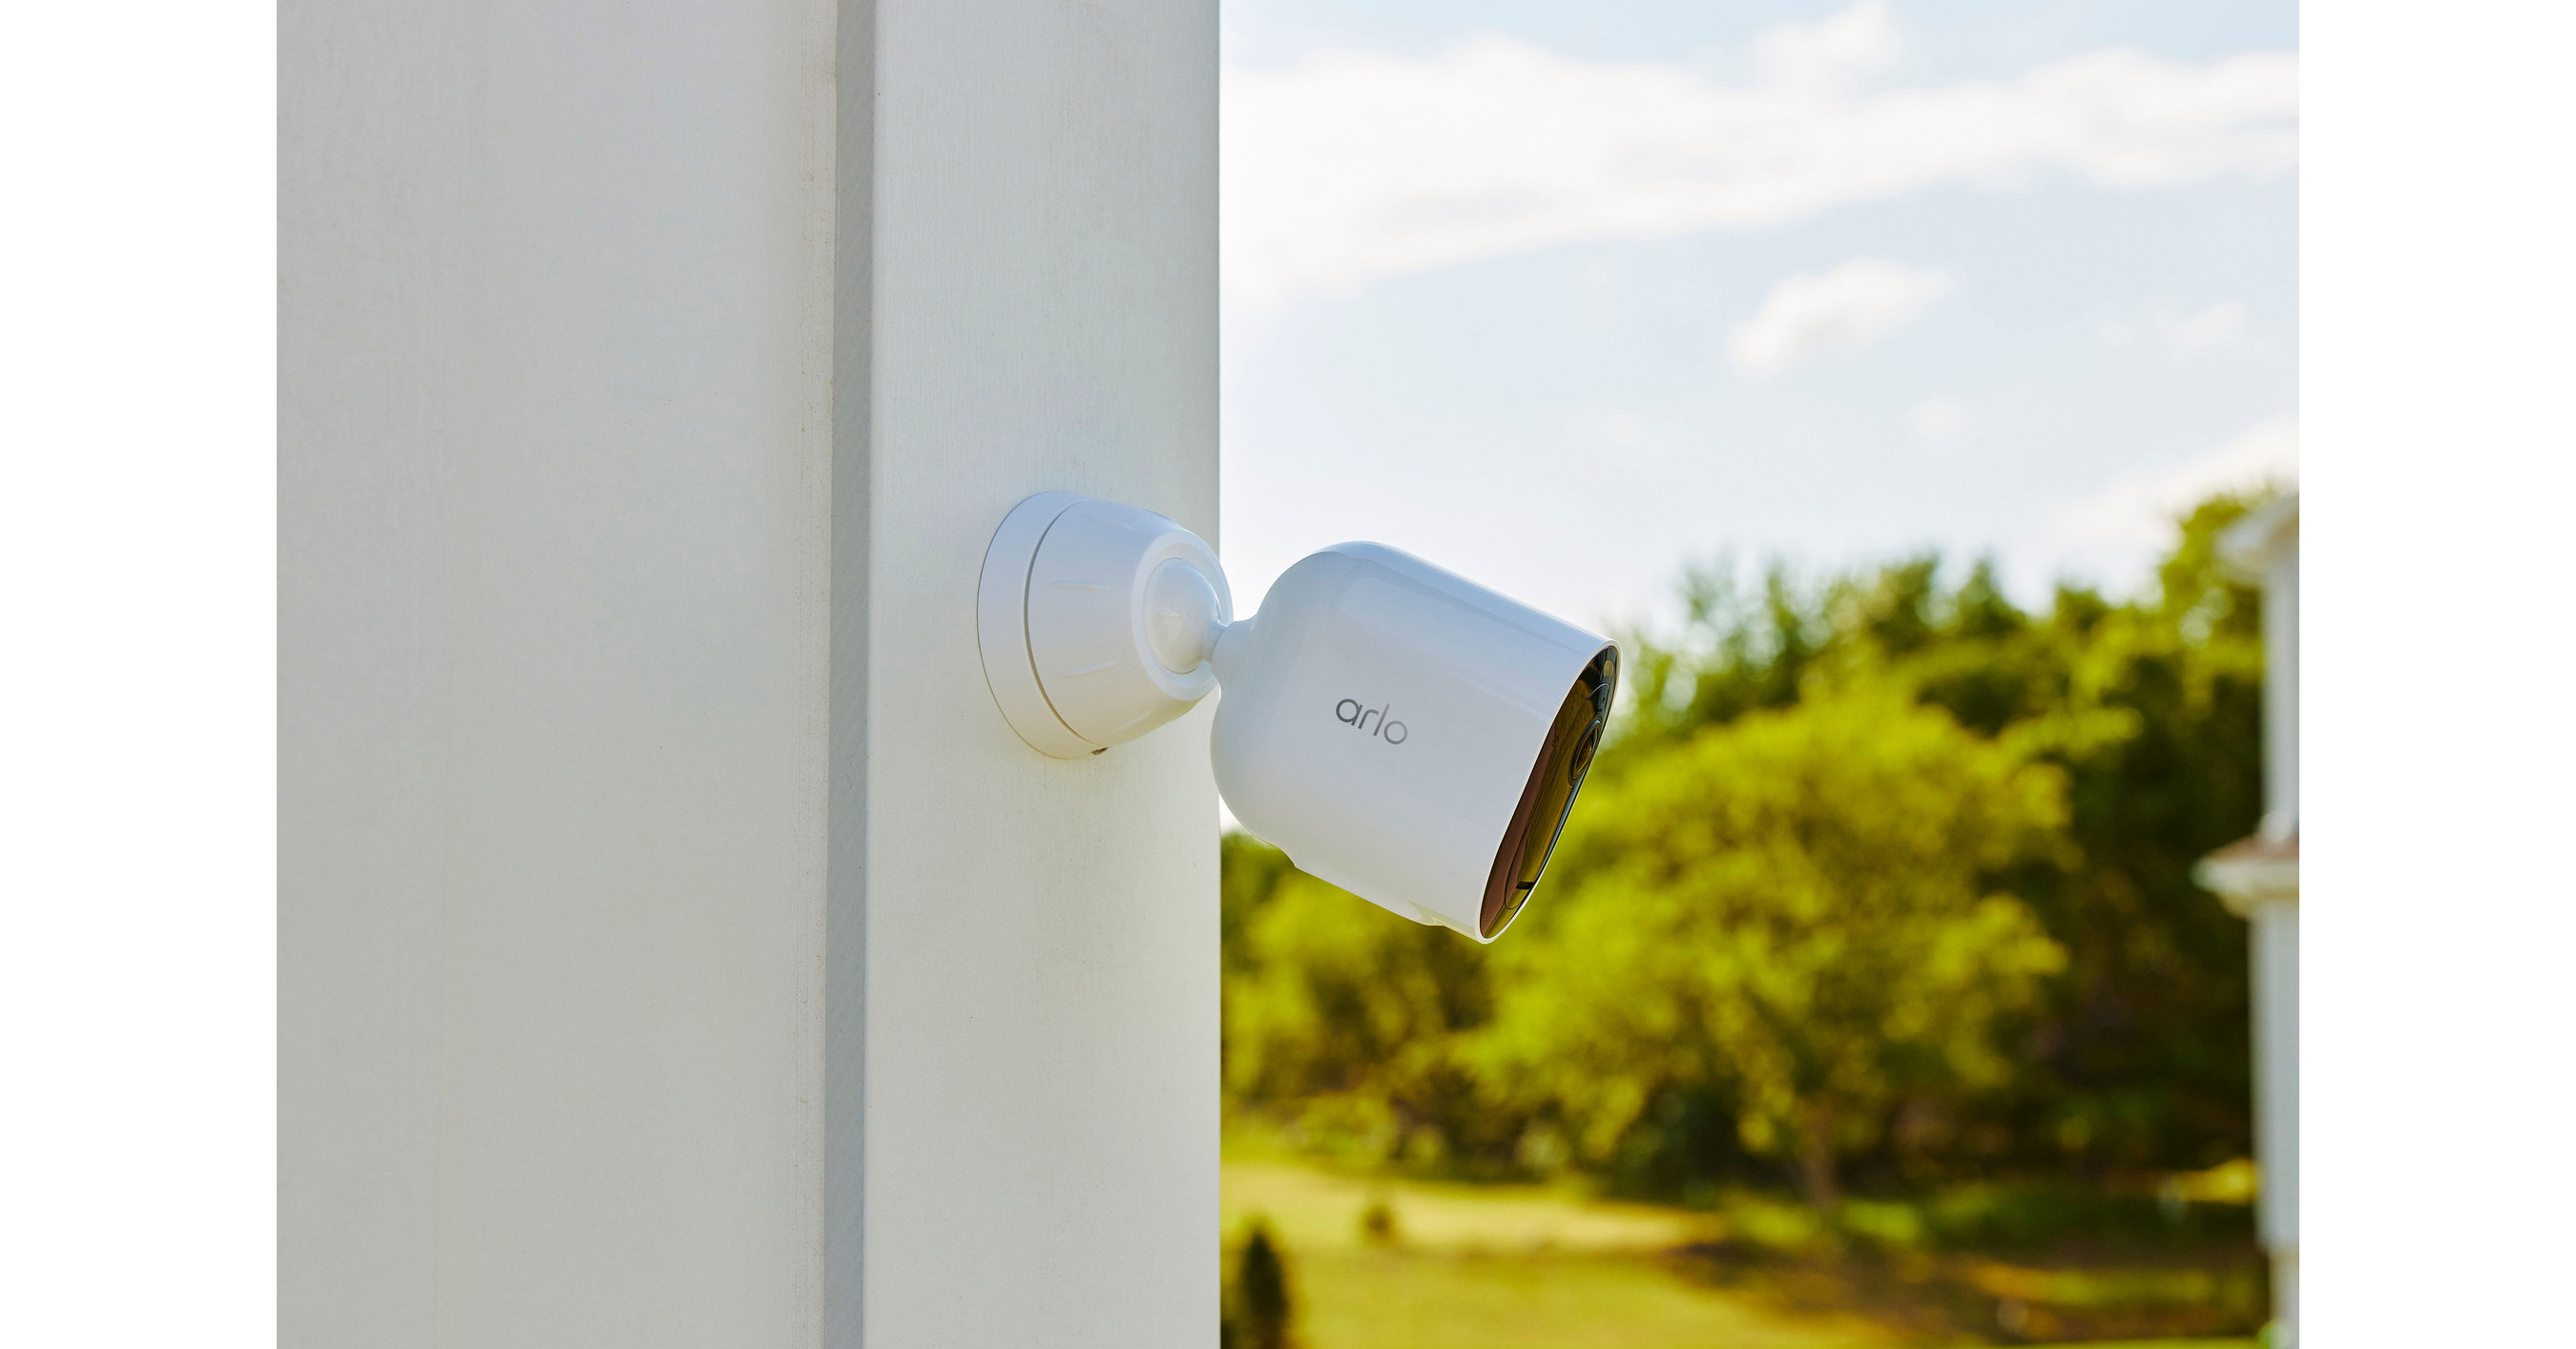 Arlo Pro 5S 2K Indoor/Outdoor Wire Free Spotlight Security Camera